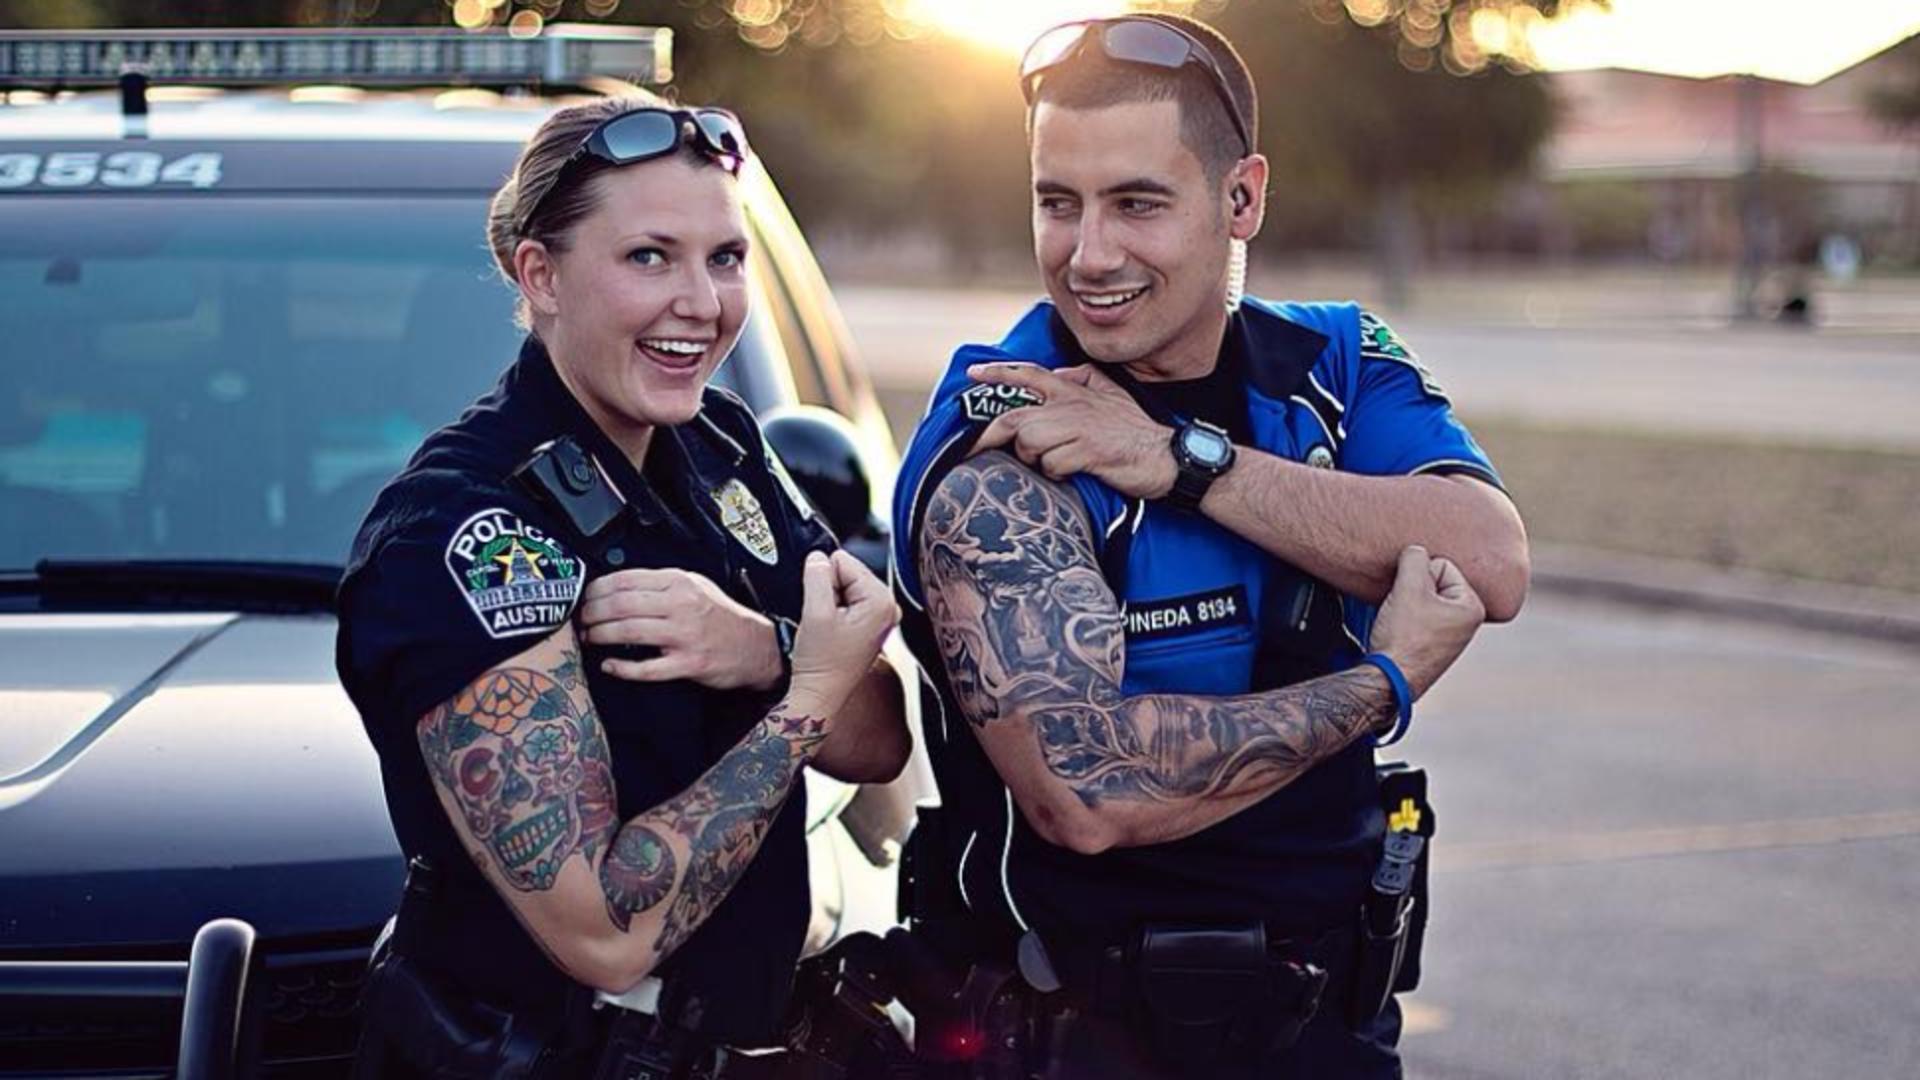 Polițiștii au primit dezlegare la tatuaje. Unde au voie cu desene pe piele, conform modificărilor la Statutul Polițistului